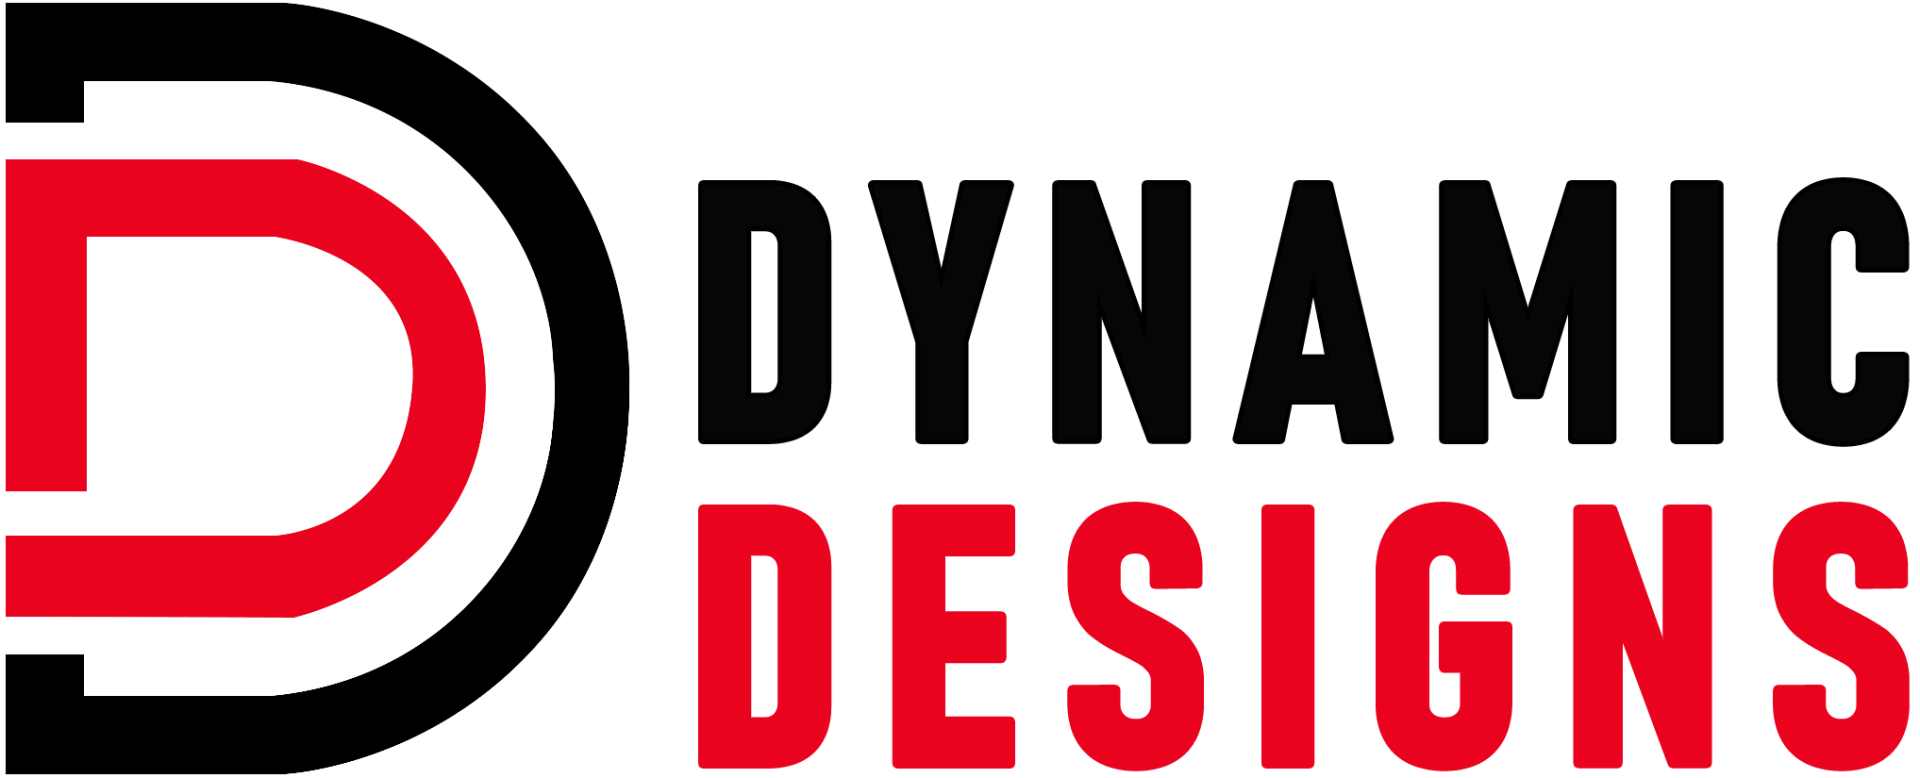 Dynamic Designs